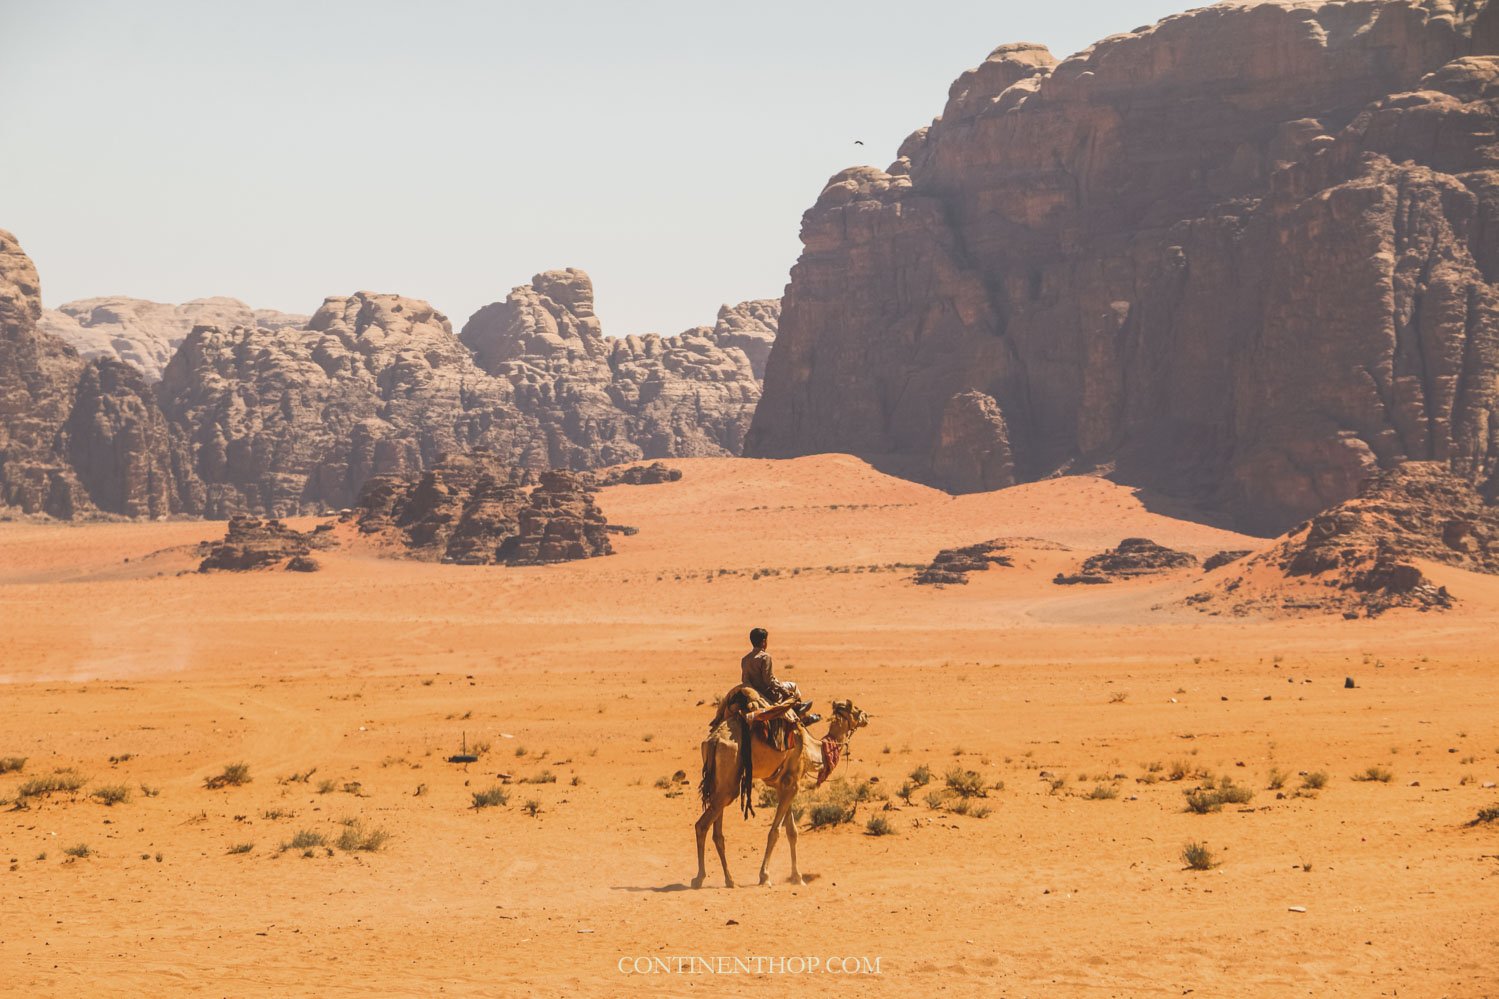 Jordan tourist spots Man on camel in Wadi Rum